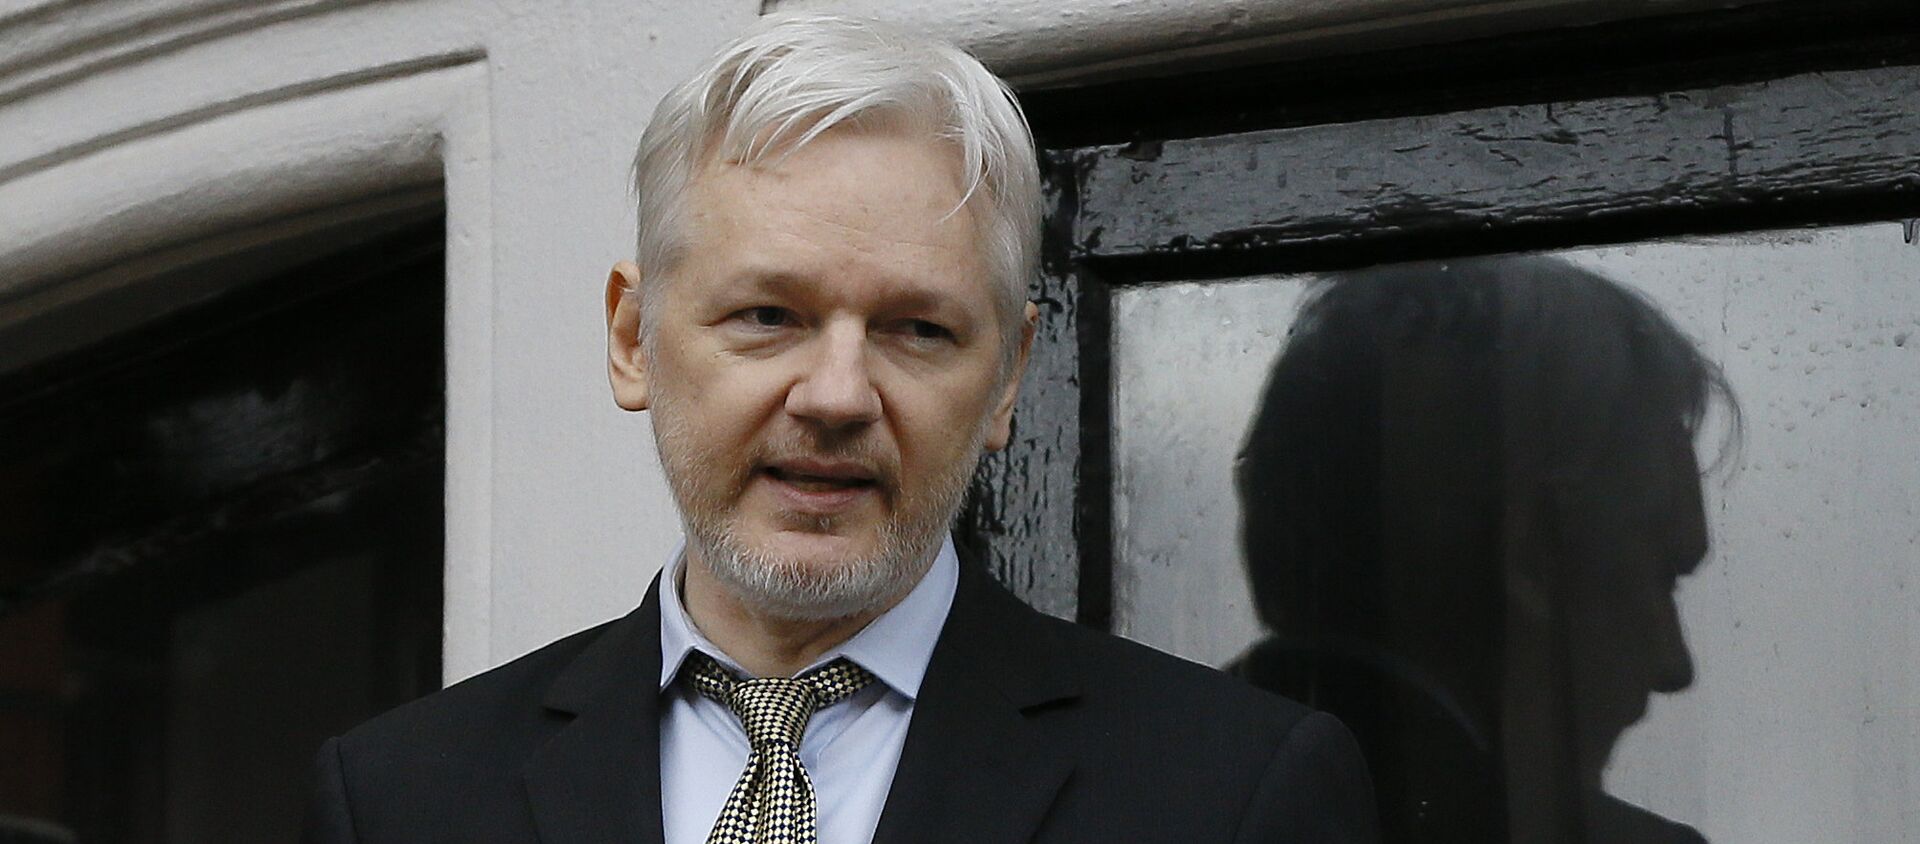 Wikileaks founder Julian Assange speaks from the balcony of the Ecuadorean Embassy in London (File) - Sputnik International, 1920, 17.02.2017